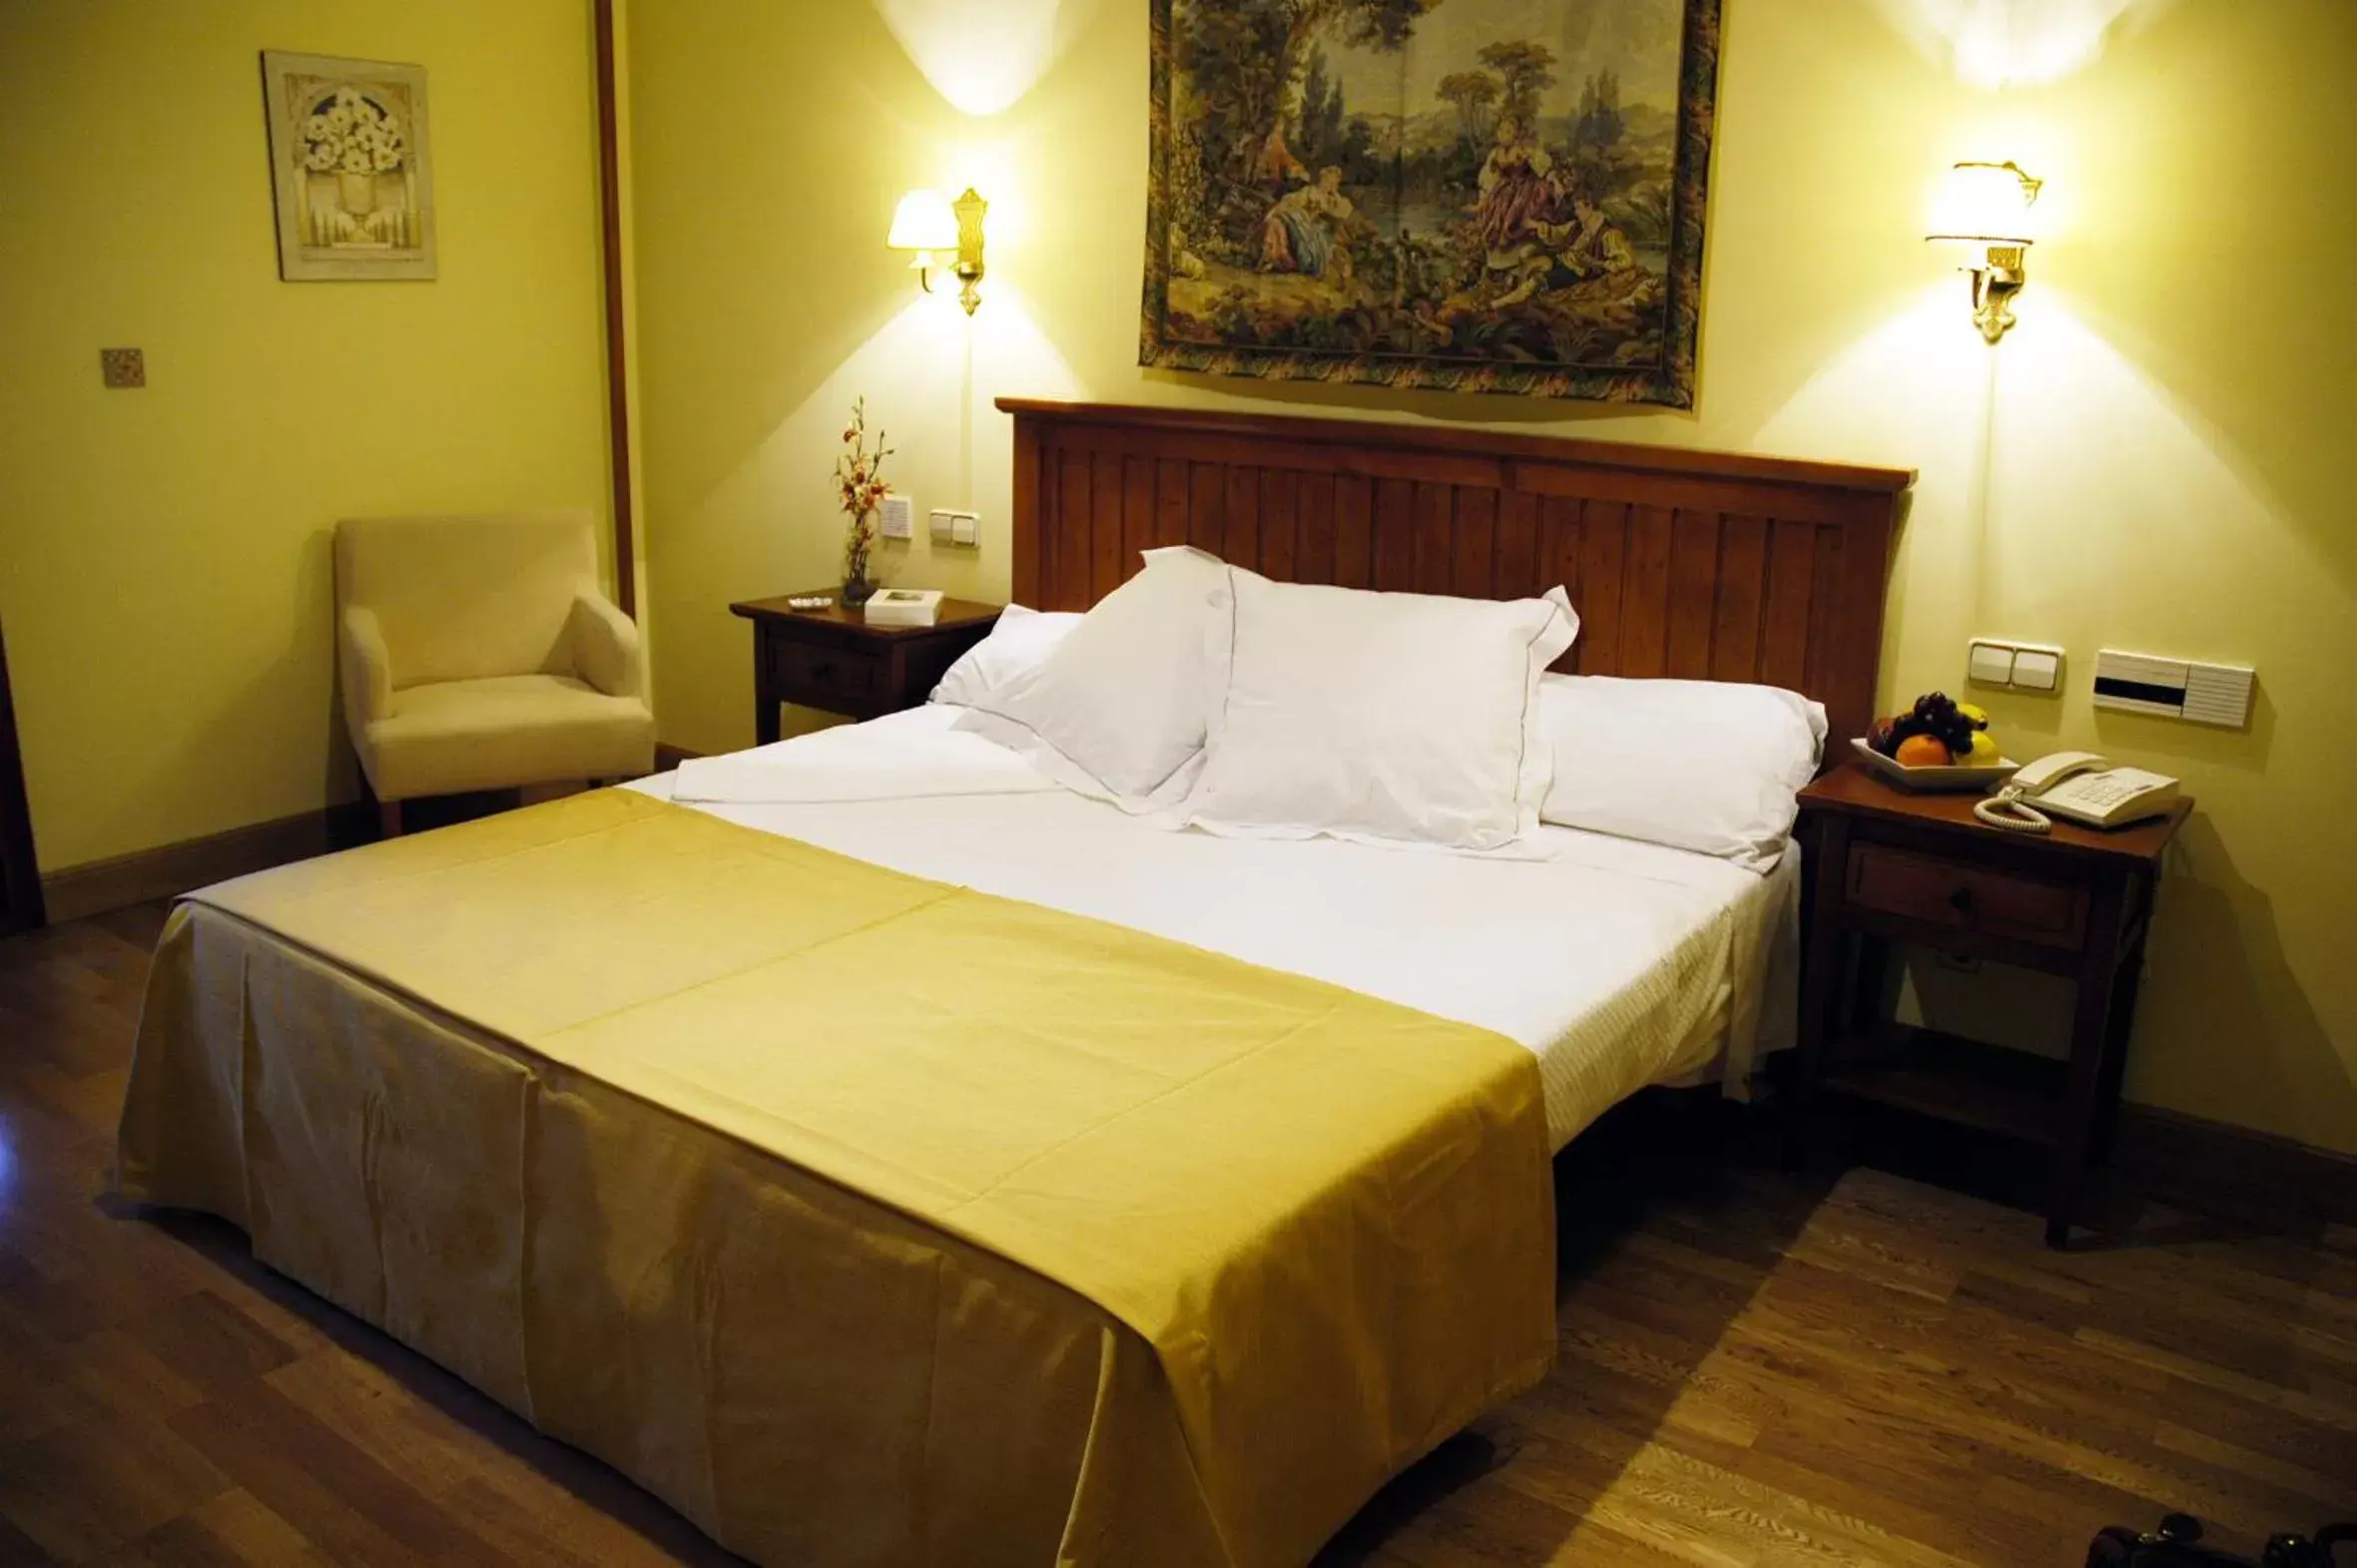 Bedroom in Hotel Casona de la Reyna